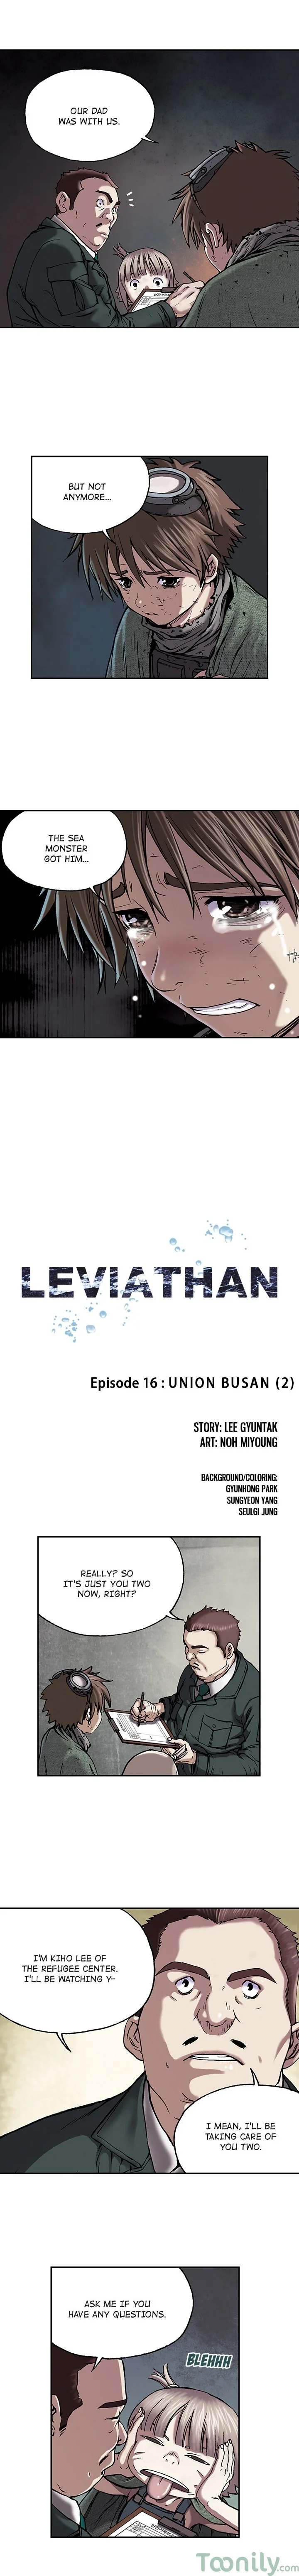 leviathan-chap-16-0